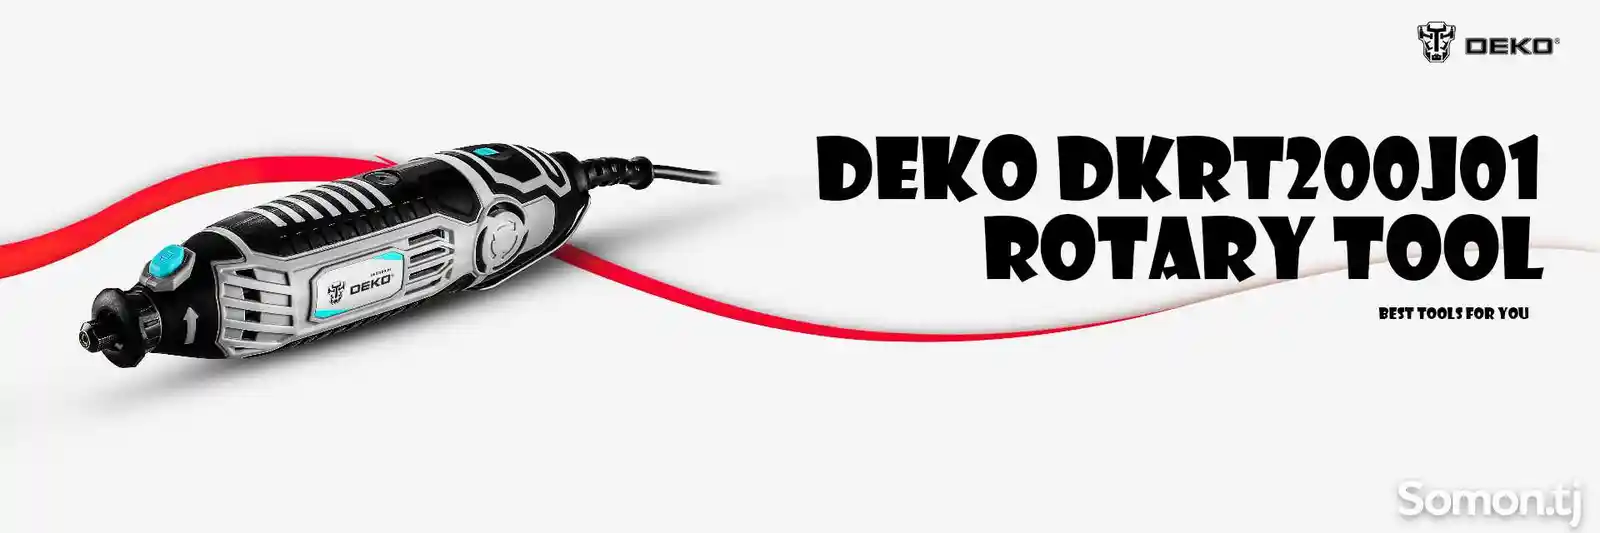 Мини-шлифовальный станок 200W Deko DKRT200J01 SET3 + 128 деталей-9